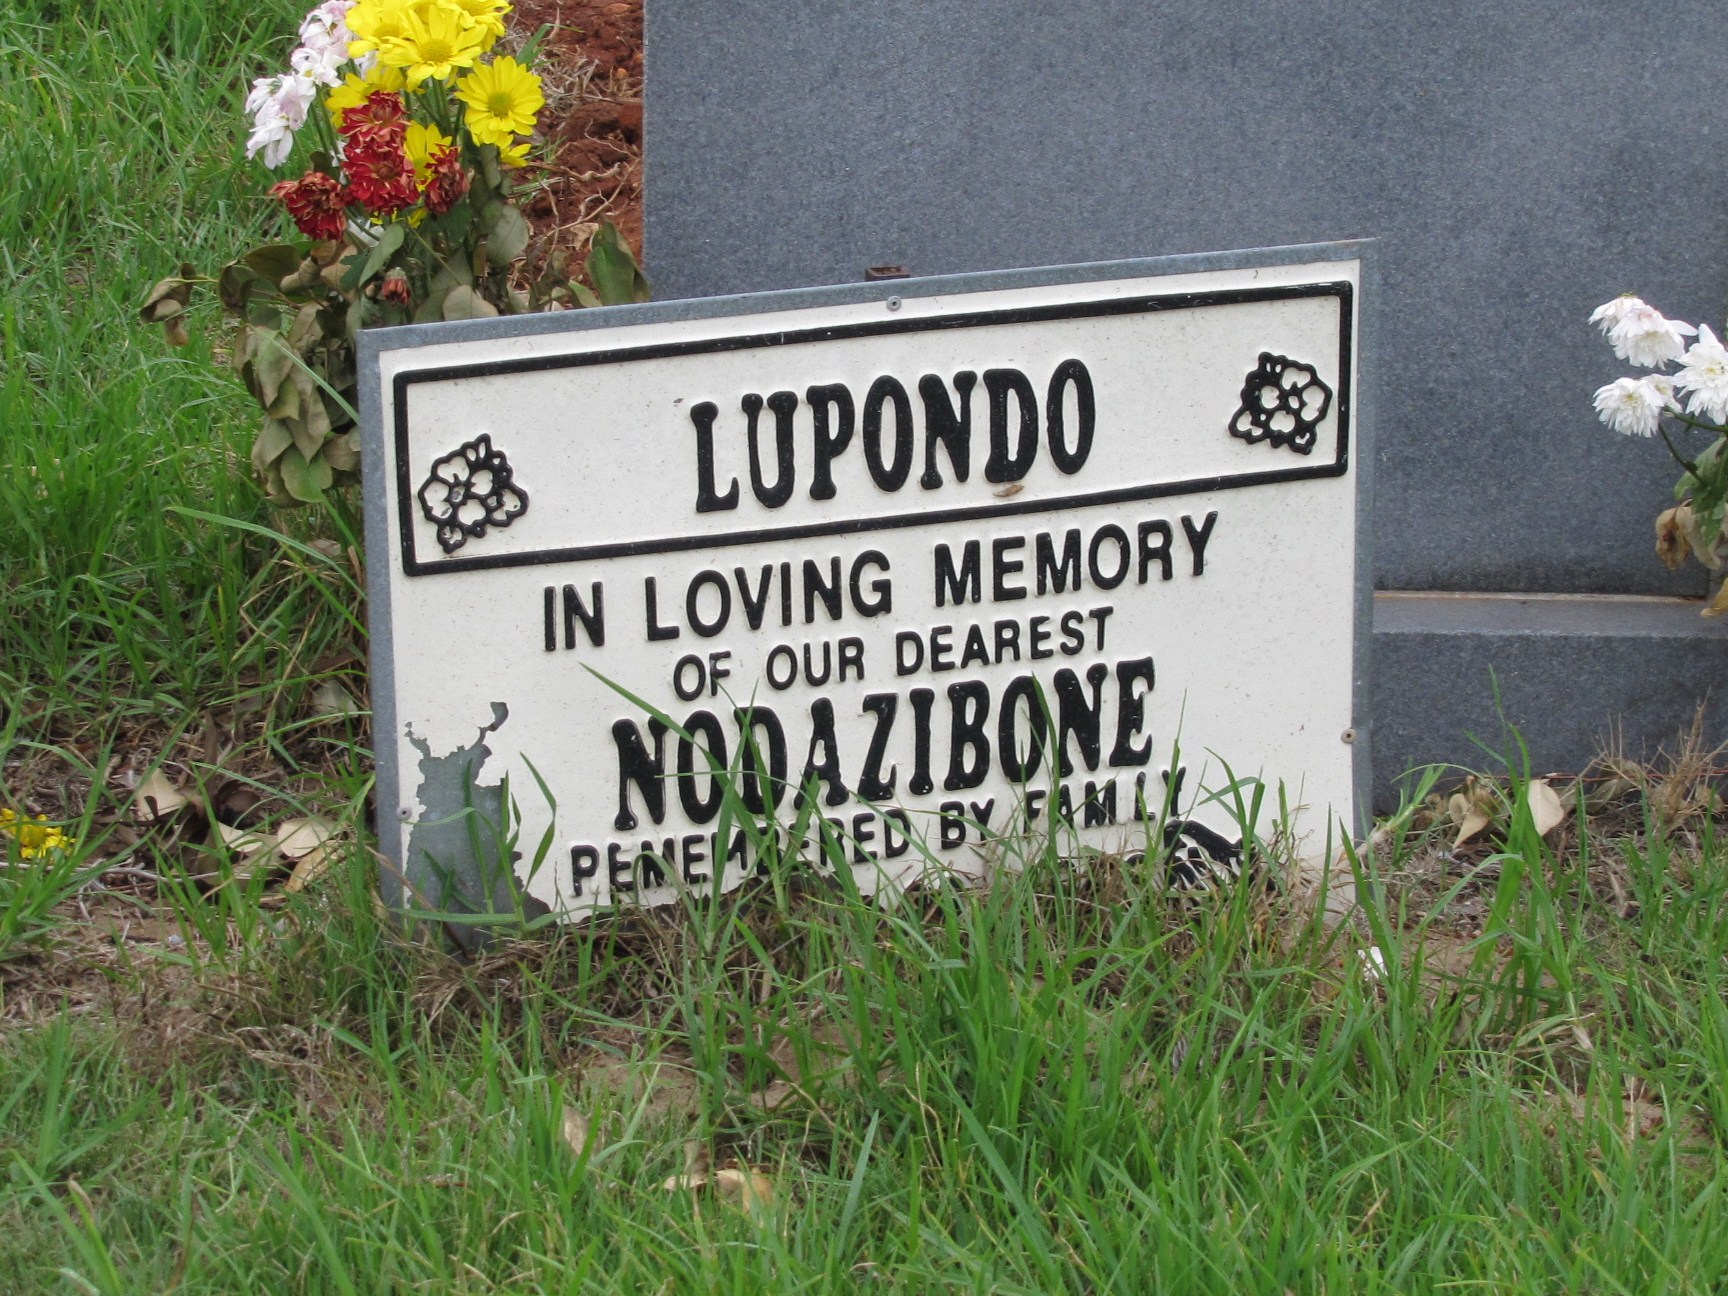 LUPONDO Nodazibone 1956 - 2005